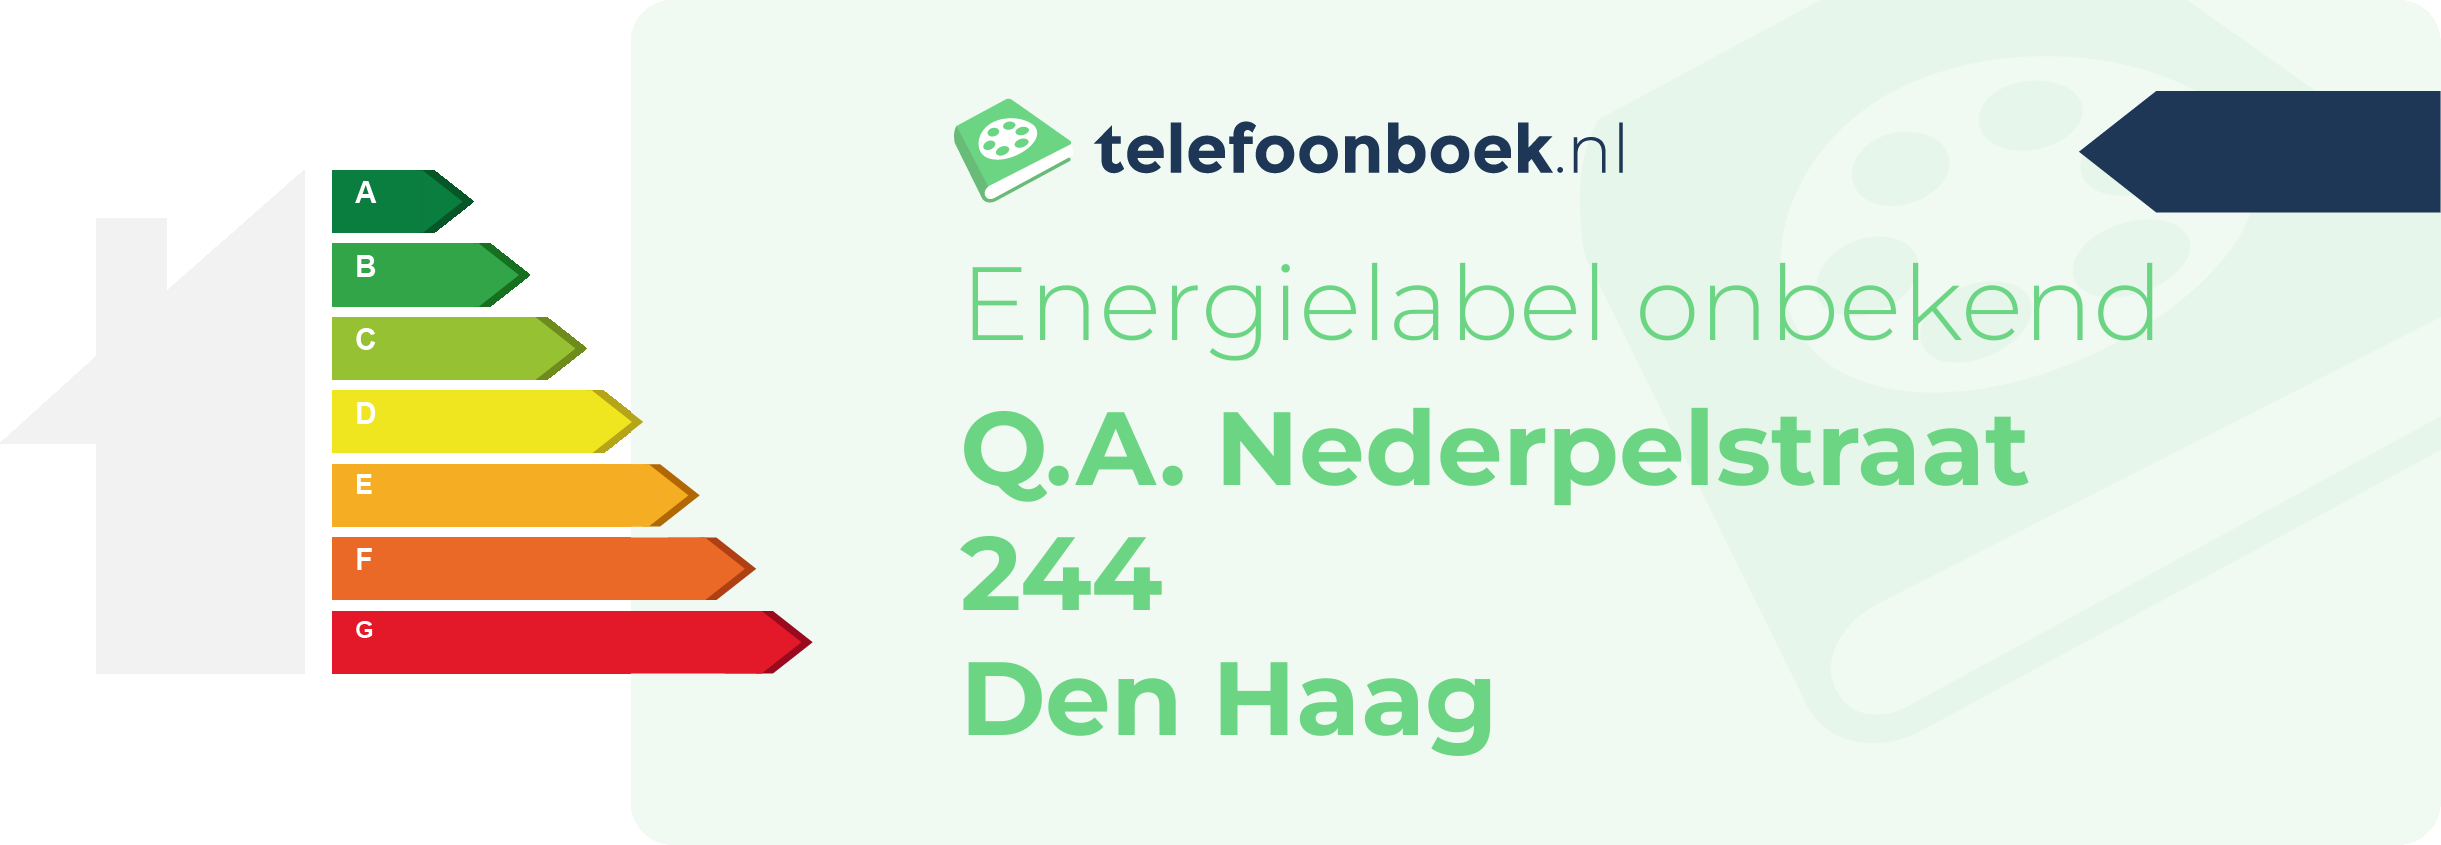 Energielabel Q.A. Nederpelstraat 244 Den Haag